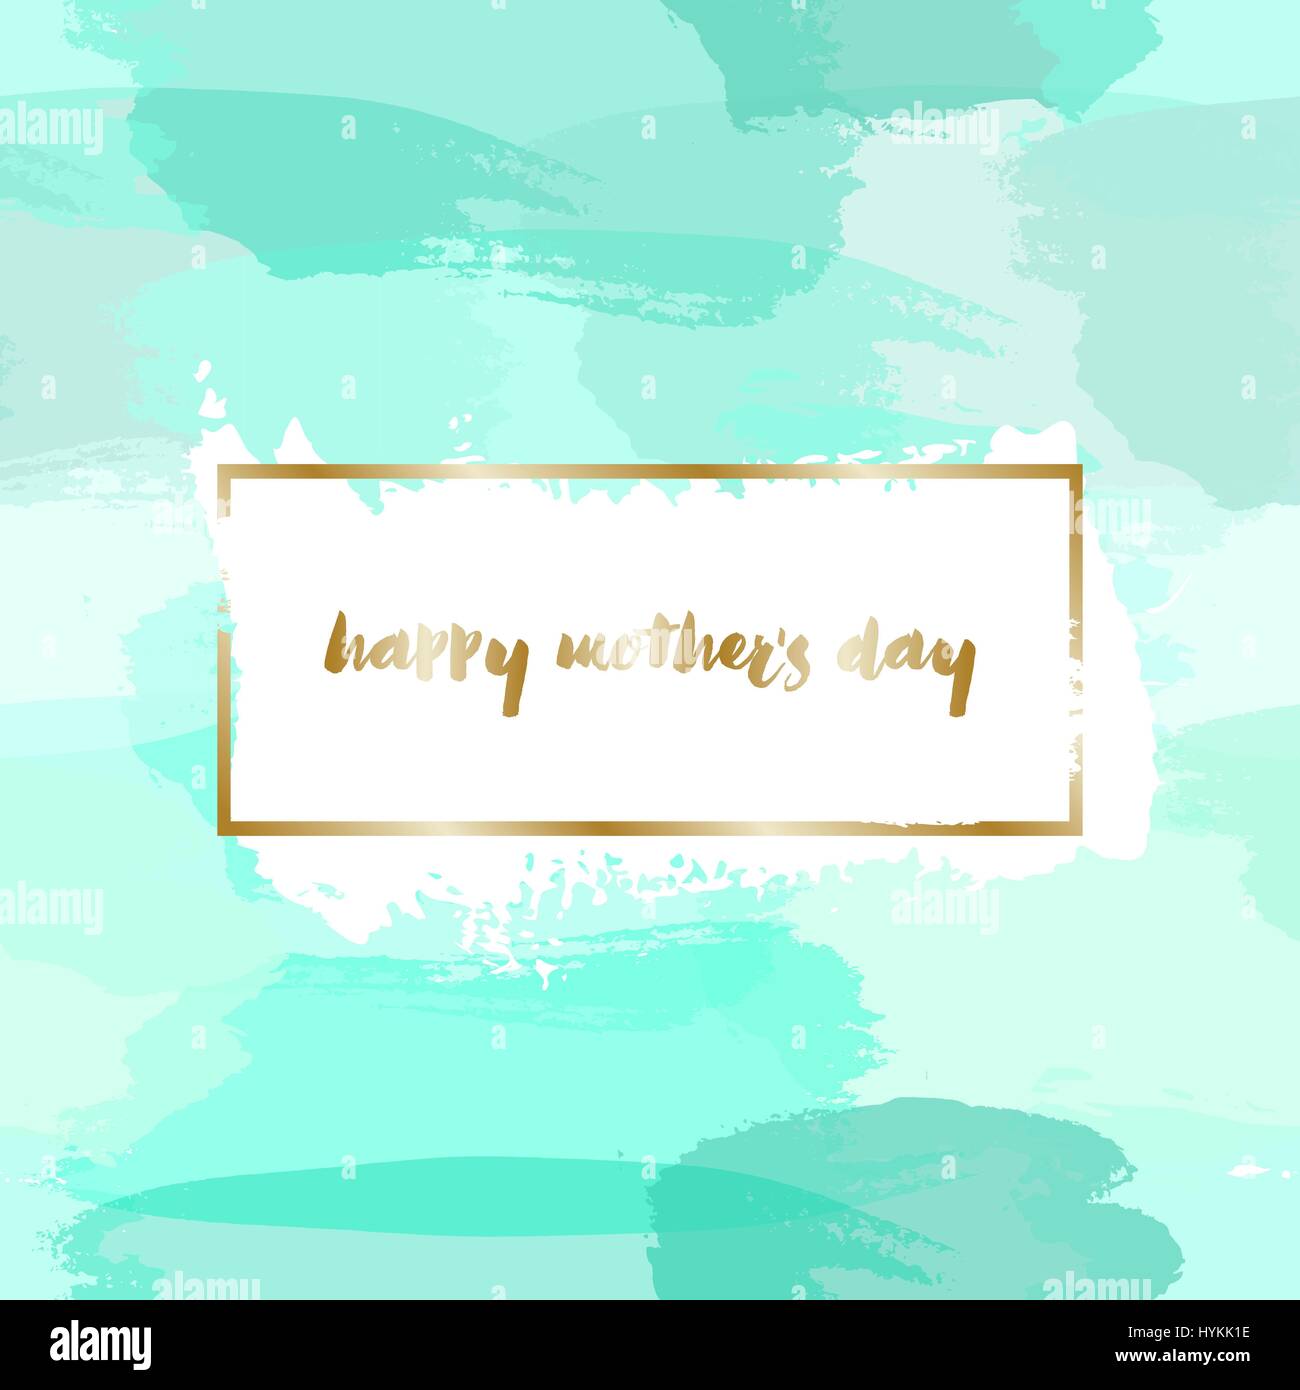 Muttertags-Grußkarte design mit goldenen Lettern Nachricht und türkis grün Aquarell Pinselstriche im Hintergrund. Stock Vektor